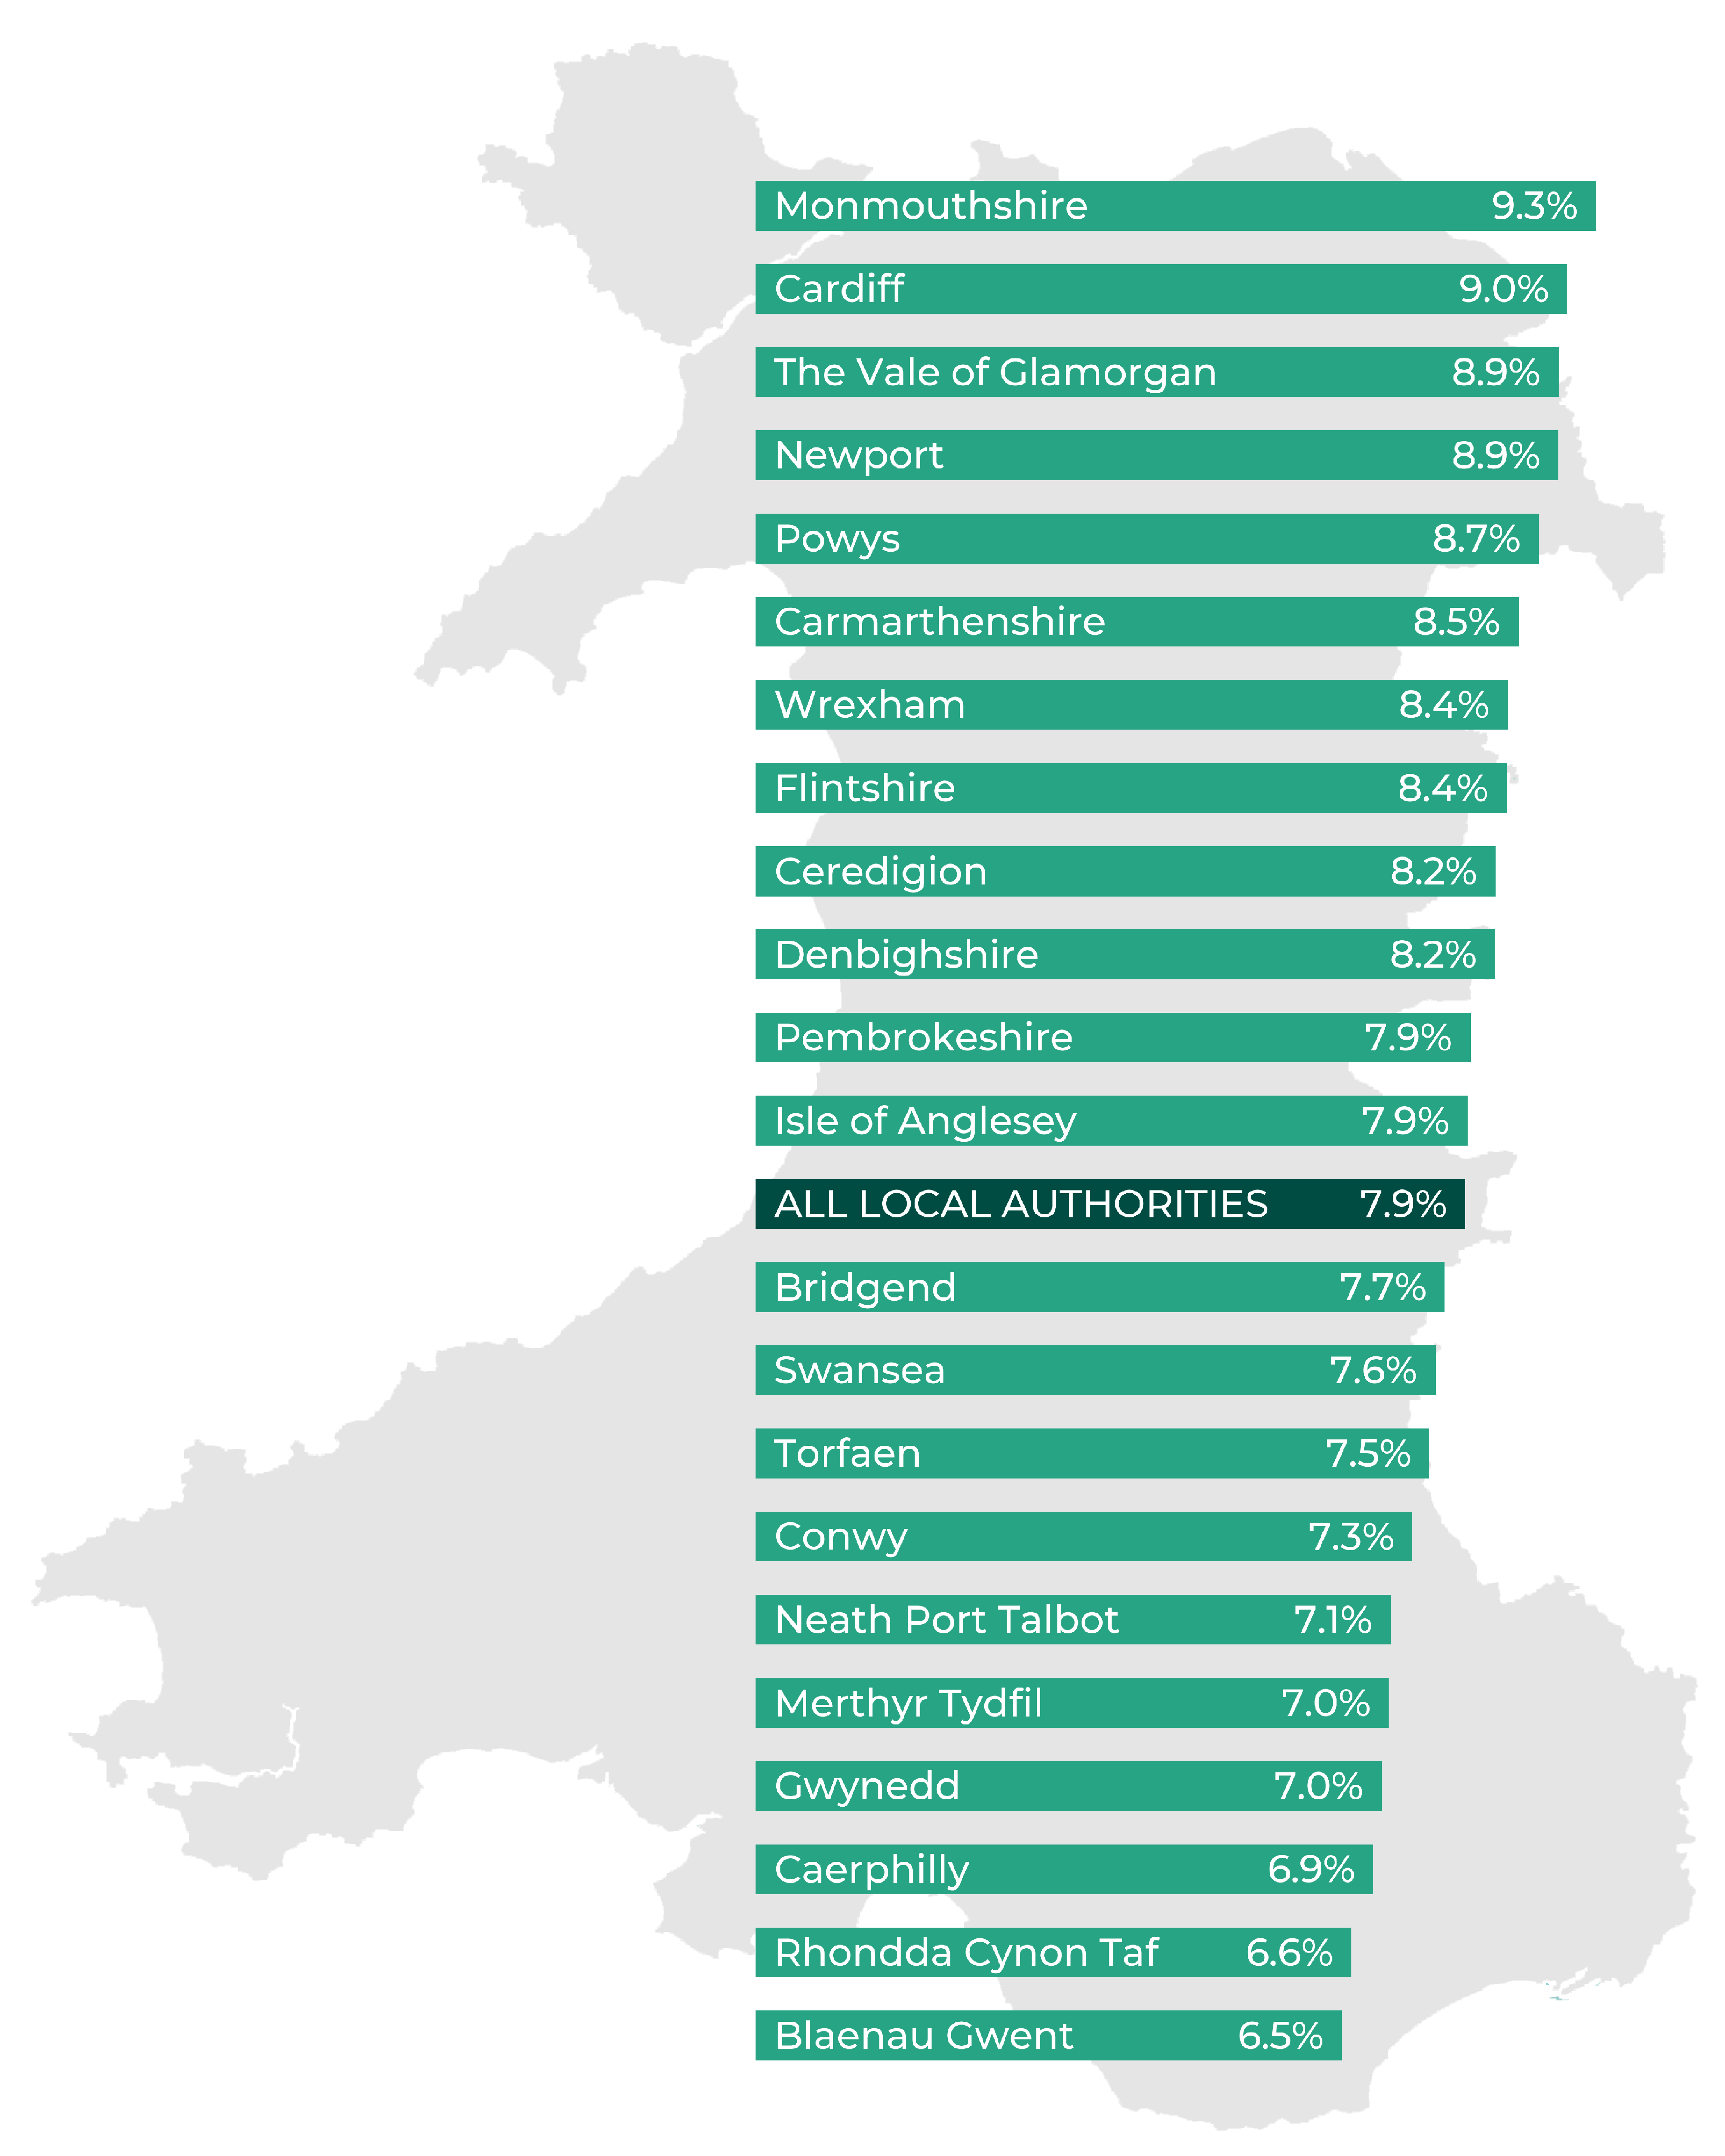 Monmouthshire 9.3%, Cardiff 9.0%, The Vale of Glamorgan 8.9%, Newport 8.9%, Powys 8.7%, Carmarthenshire 8.5%, Wrexham 8.4%, Flintshire 8.4%, Ceredigion 8.2%, Denbighshire 8.2%, Pembrokeshire 7.9%, Isle of Anglesey 7.9%, all local authorities 7.9%, Bridgend 7.7%, Swansea 7.6%, Torfaen 7.5%, Conwy 7.3%, Neath Port Talbot 7.1%, Merthyr Tydfil 7.0%, Gwynedd 7.0%, Caerphilly 6.9%, Rhondda Cynon Taf 6.6%, Blaenau Gwent 6.5%.